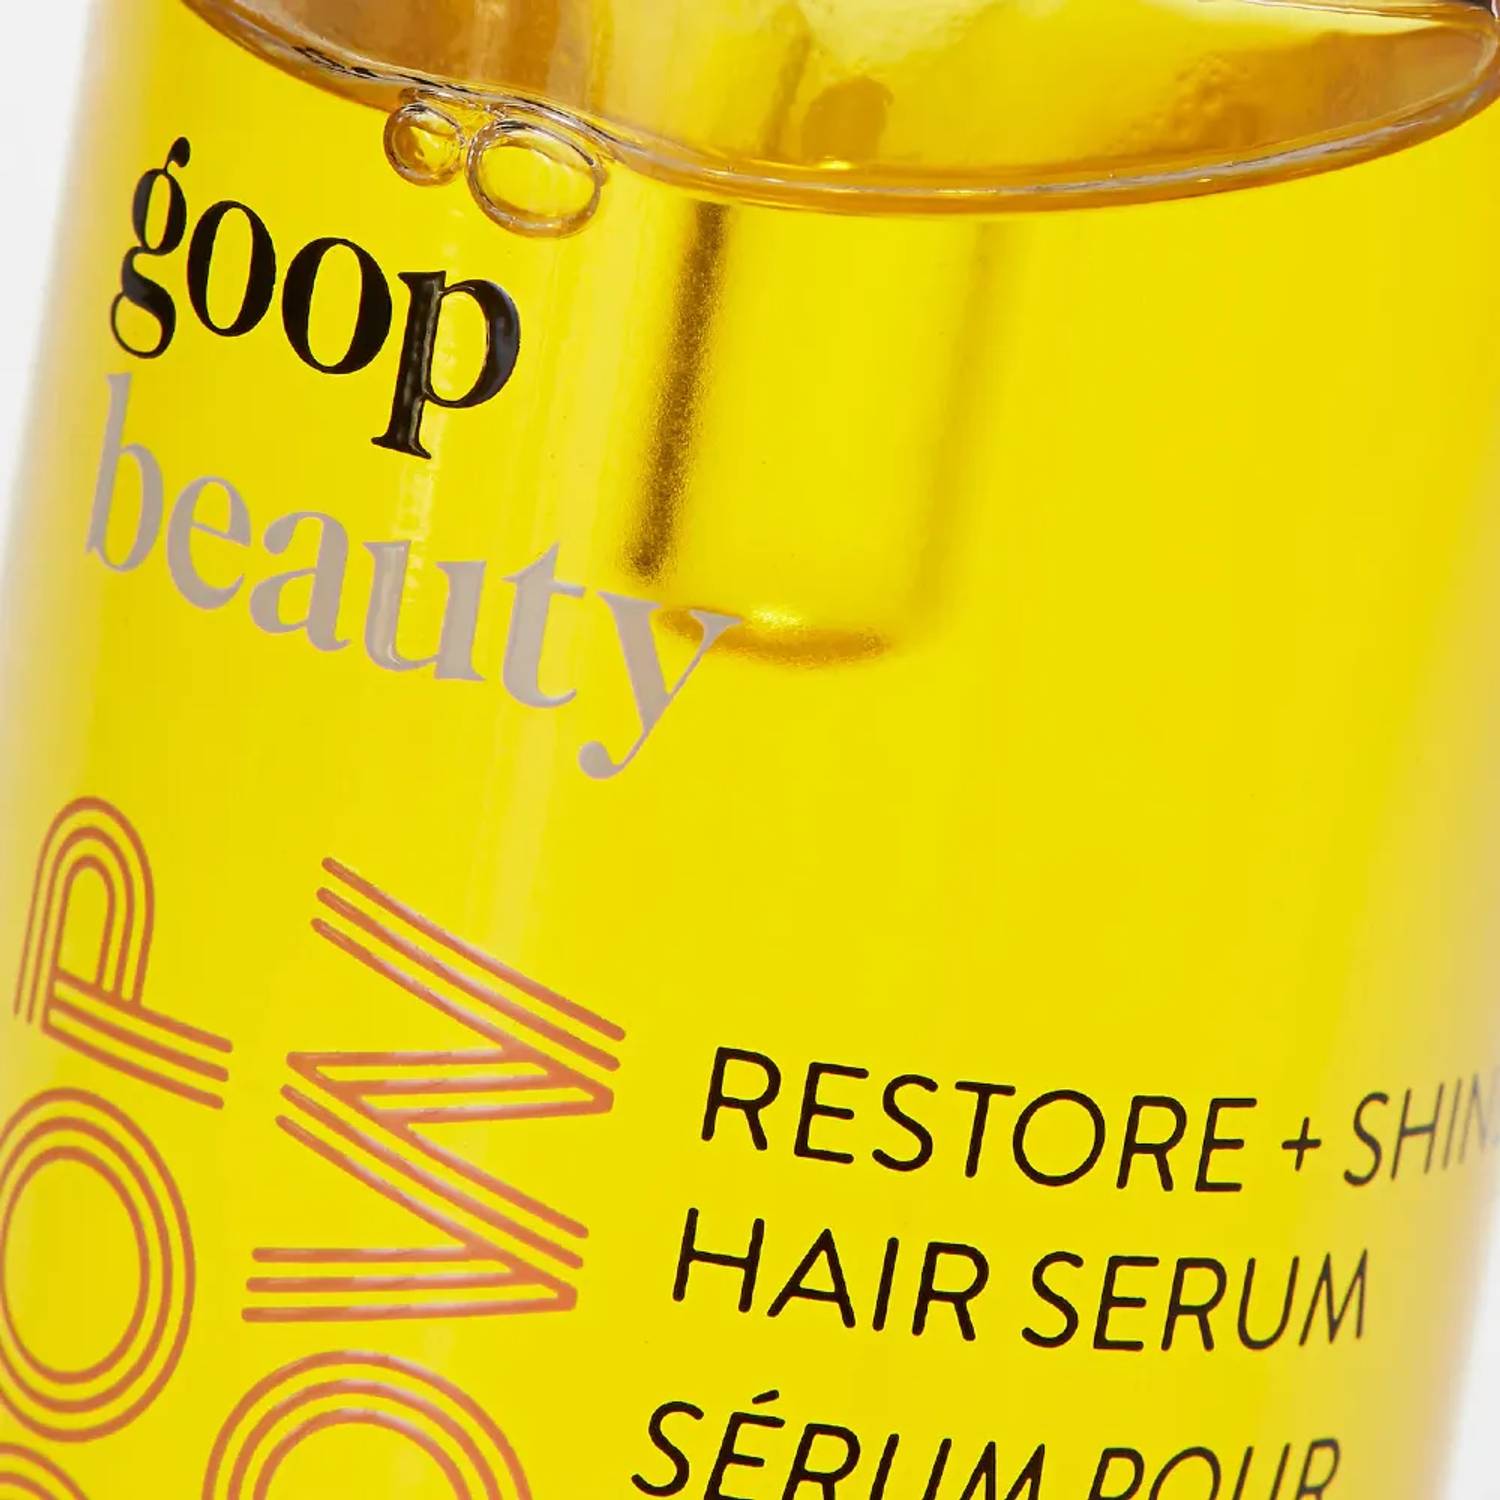 Restore + Shine Hair Serum